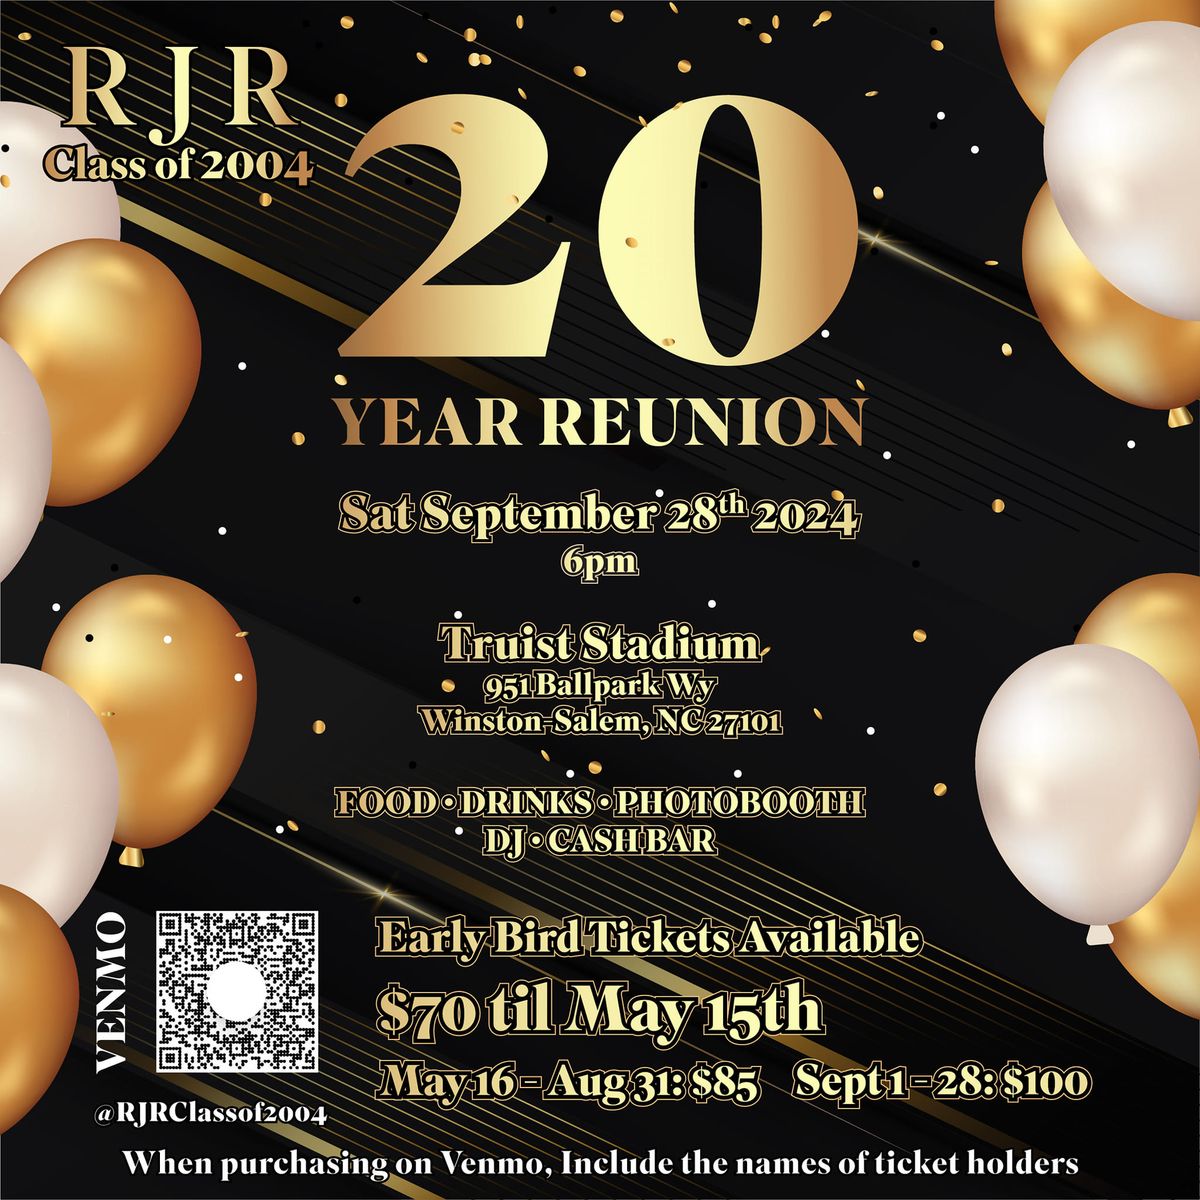 RJR Class of 2004 20th Reunion